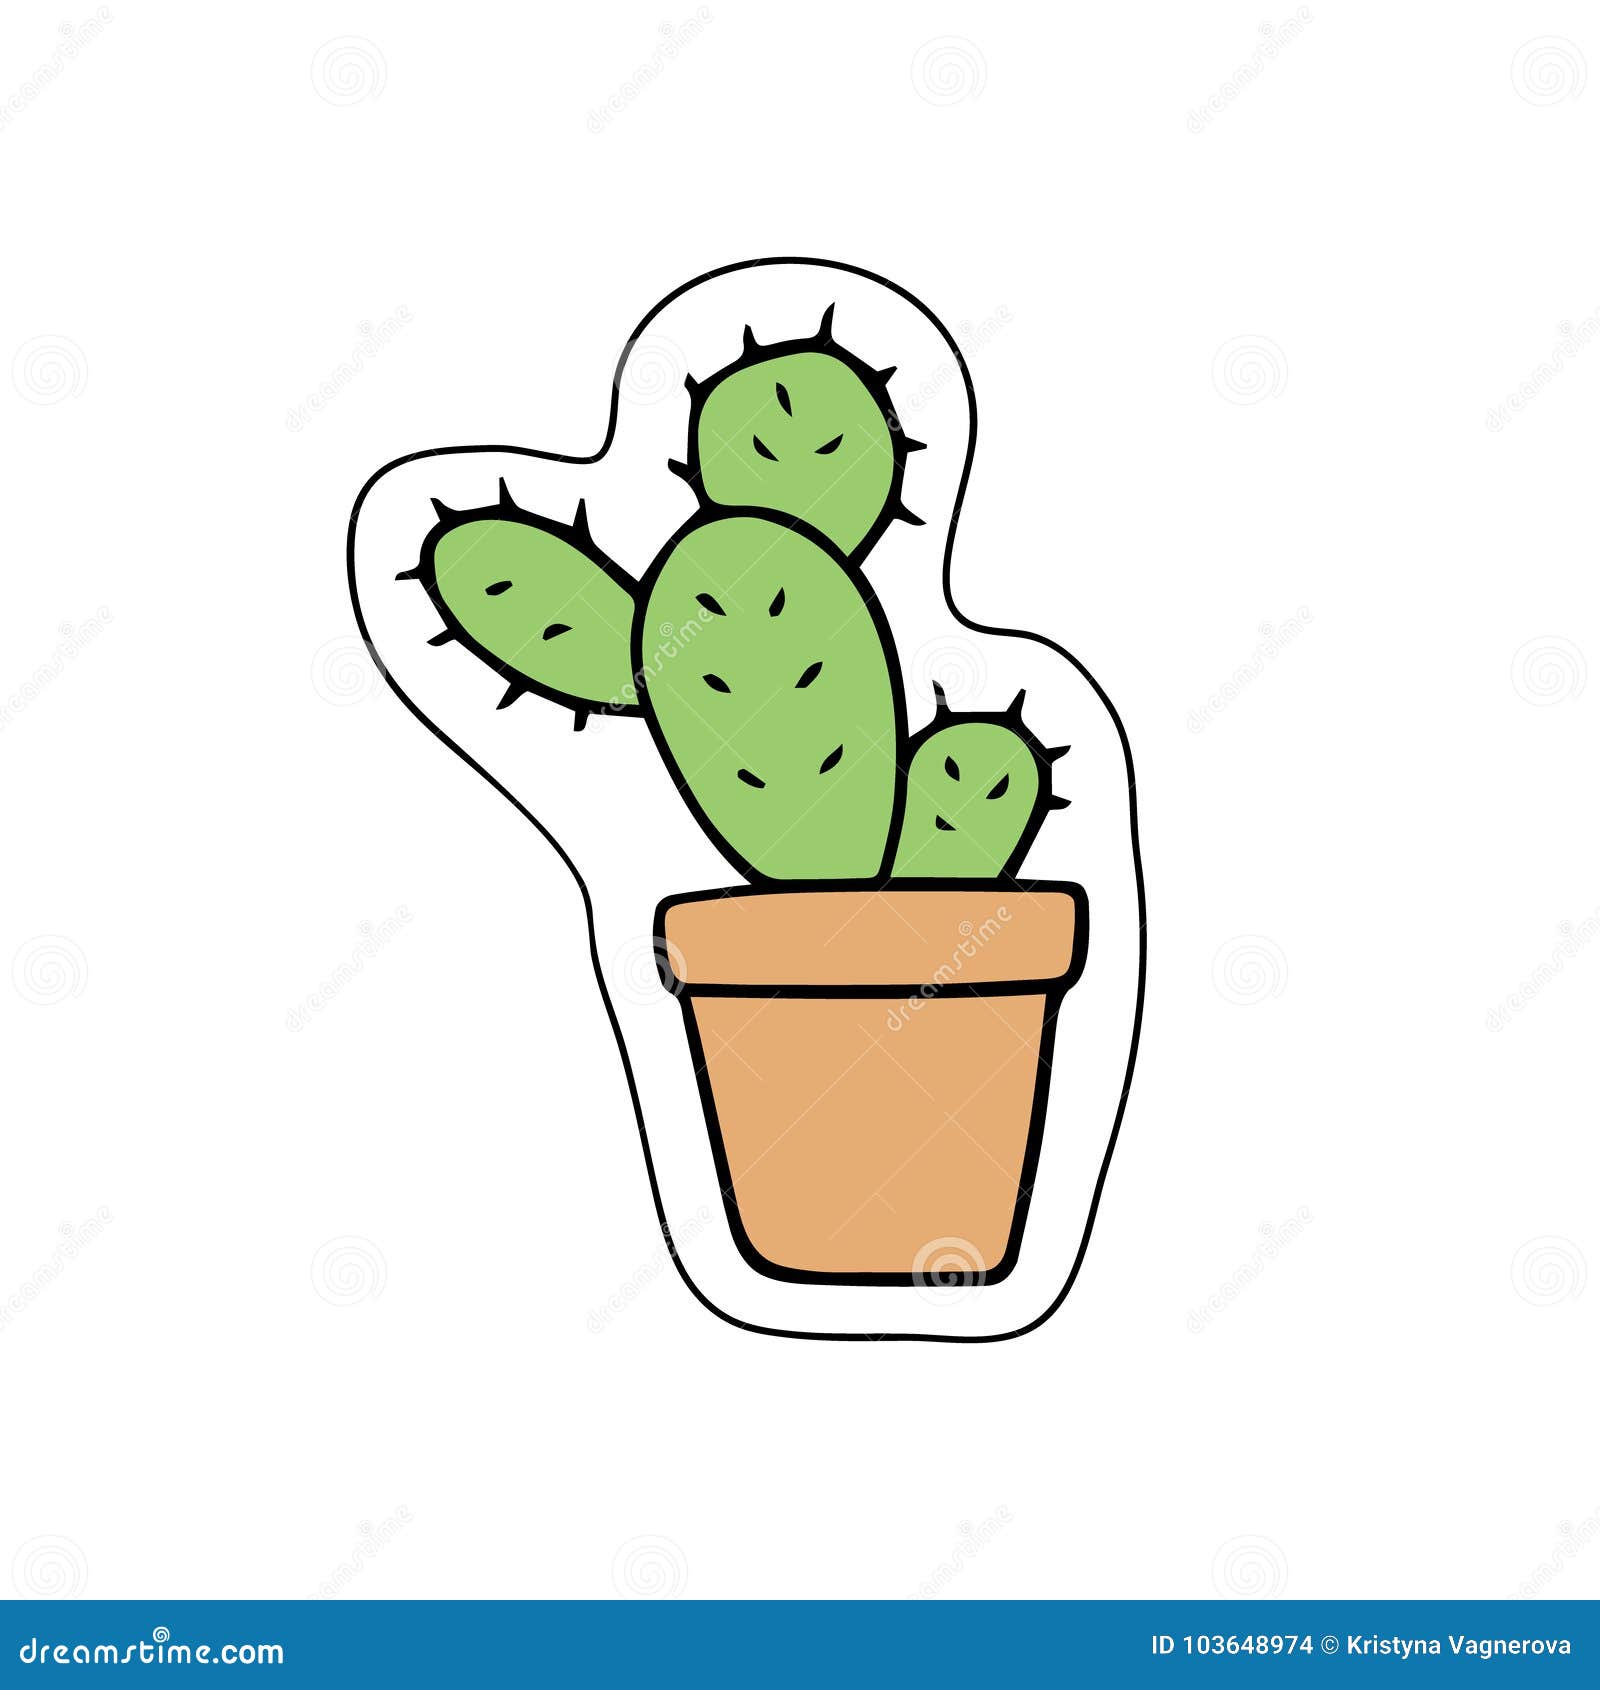 Cute Cactus  Cactus cartoon, Cactus drawing, Cactus illustration